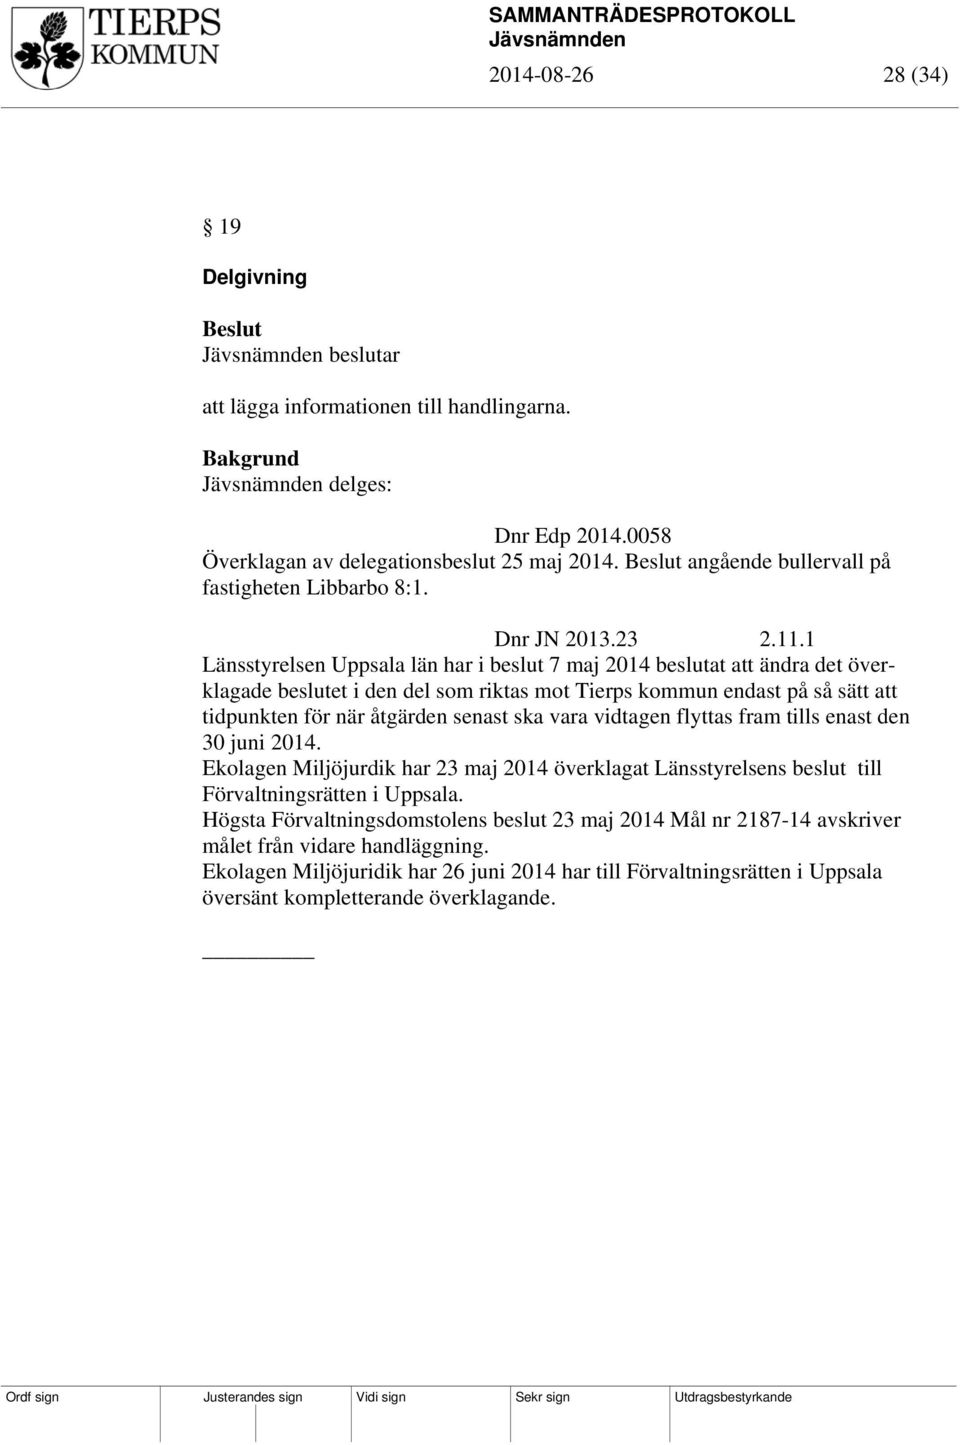 1 Länsstyrelsen Uppsala län har i beslut 7 maj 2014 beslutat att ändra det överklagade beslutet i den del som riktas mot Tierps kommun endast på så sätt att tidpunkten för när åtgärden senast ska